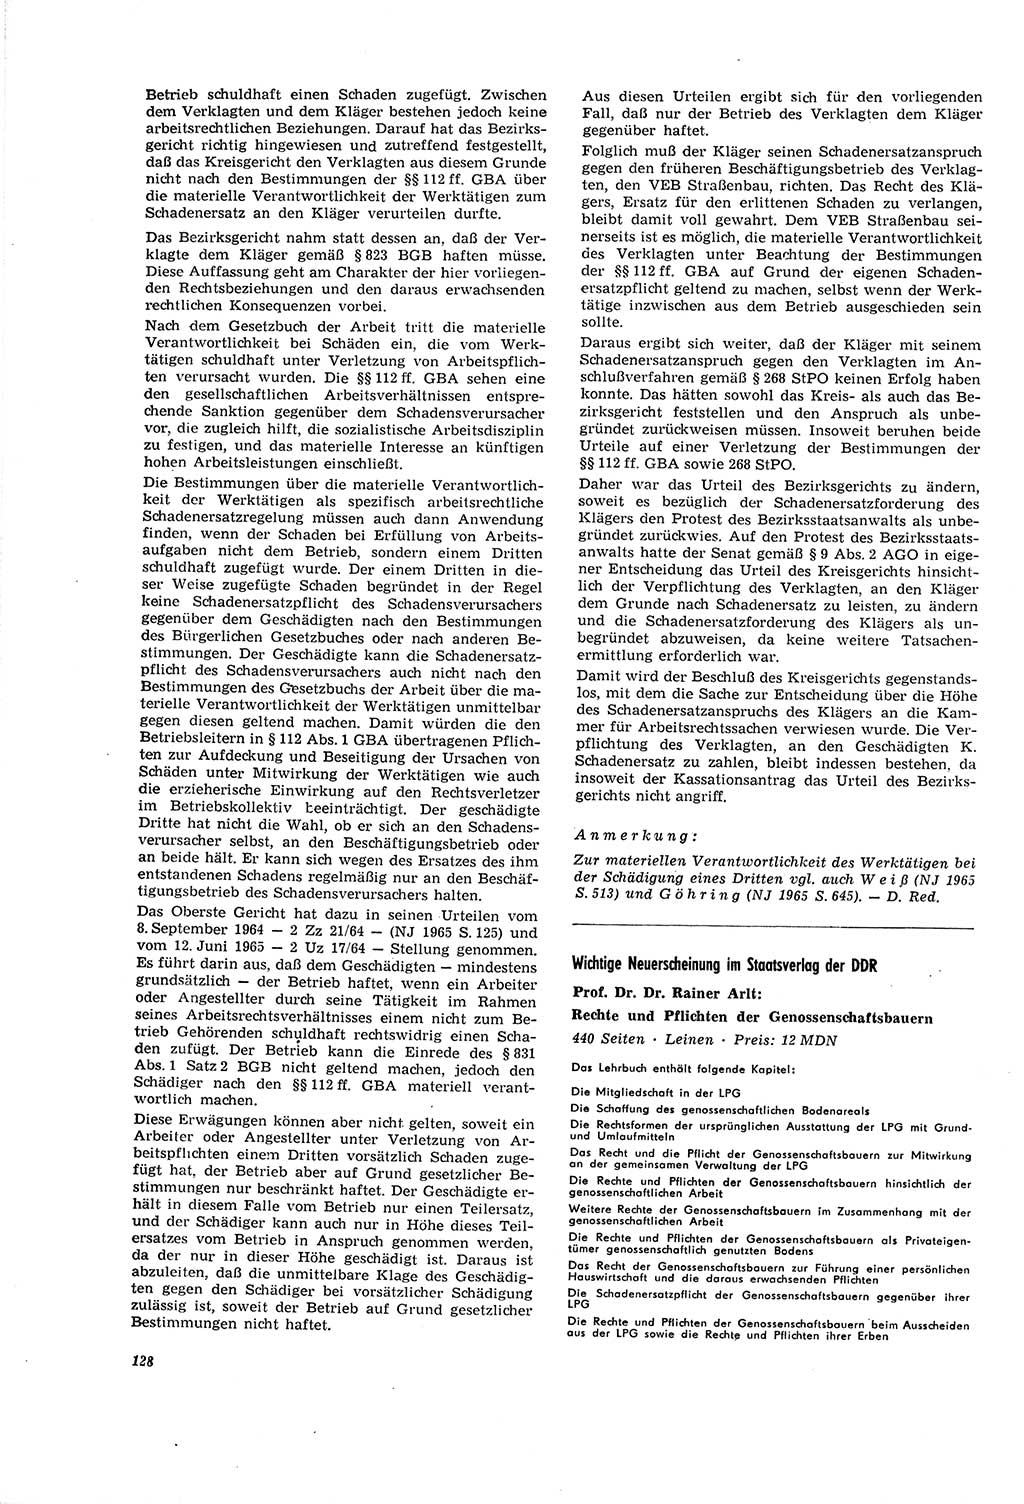 Neue Justiz (NJ), Zeitschrift für Recht und Rechtswissenschaft [Deutsche Demokratische Republik (DDR)], 20. Jahrgang 1966, Seite 128 (NJ DDR 1966, S. 128)